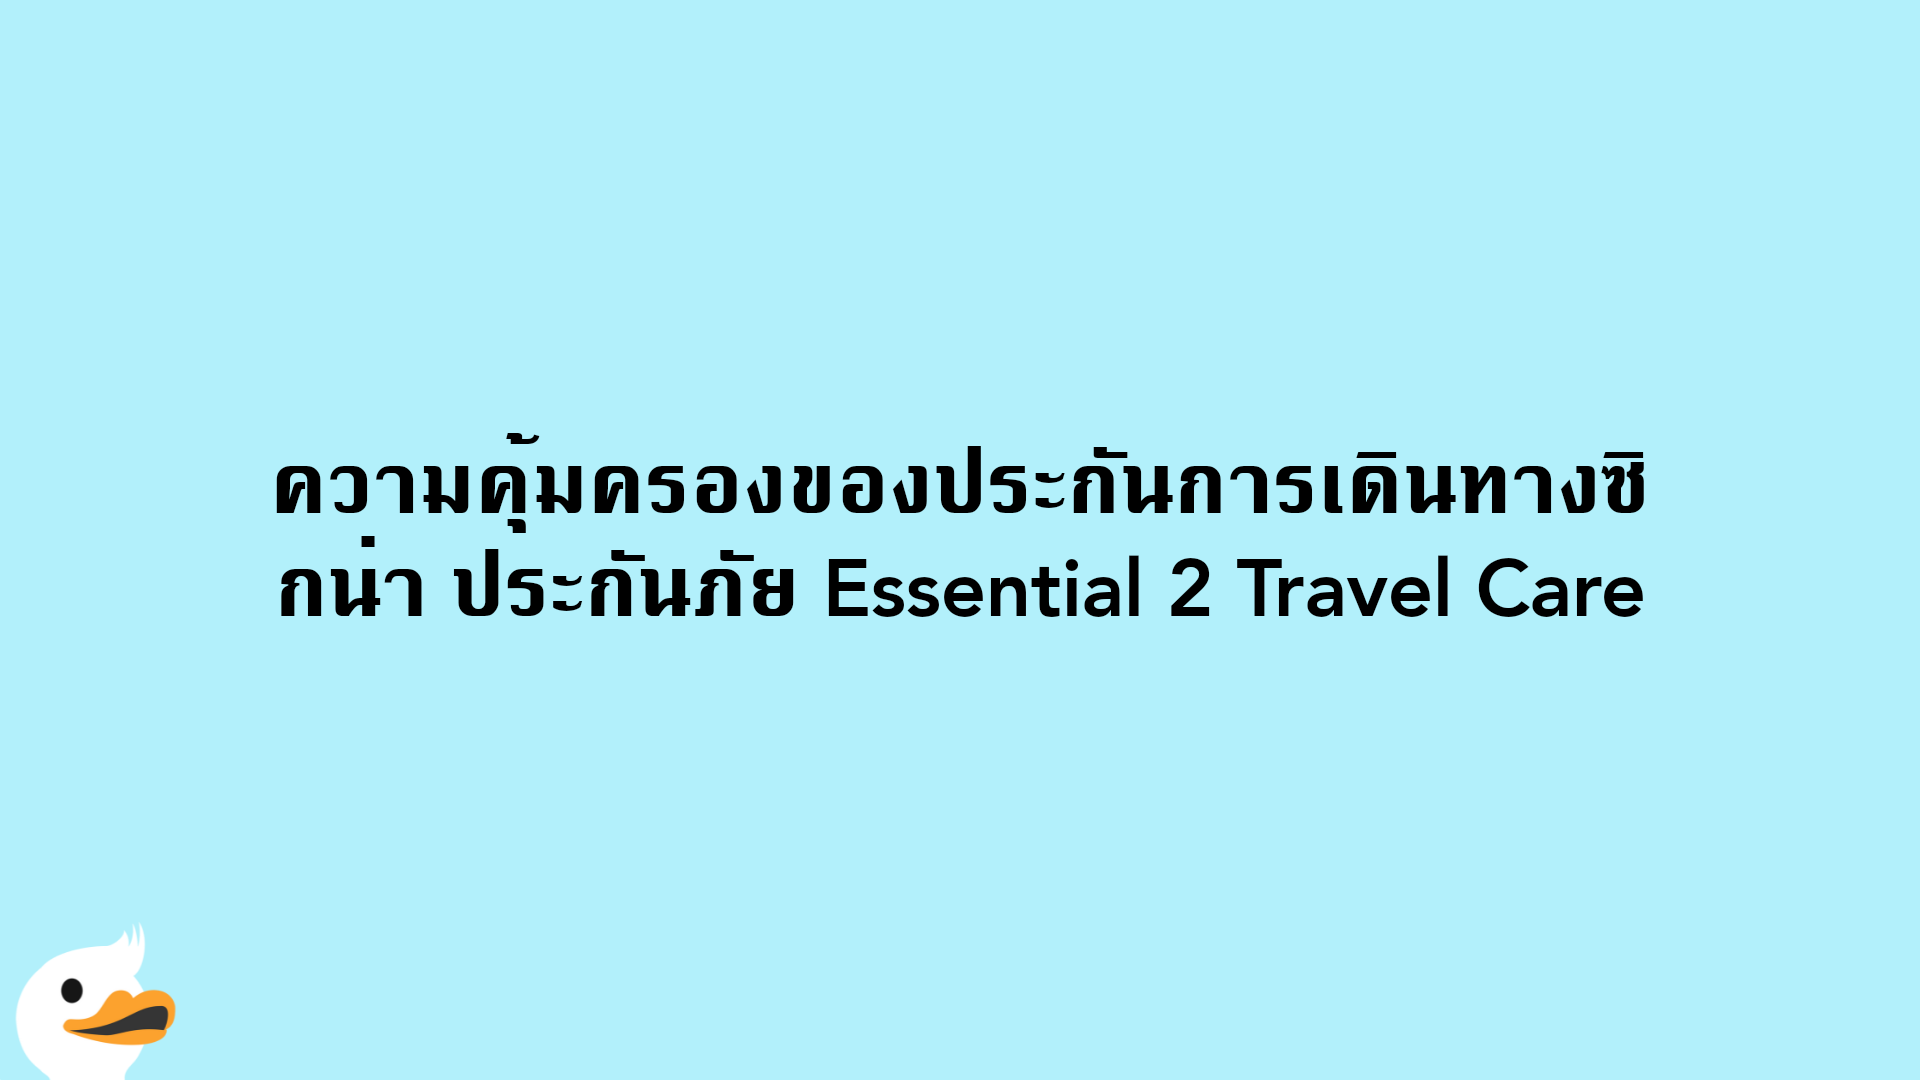 ความคุ้มครองของประกันการเดินทางซิกน่า ประกันภัย Essential 2 Travel Care